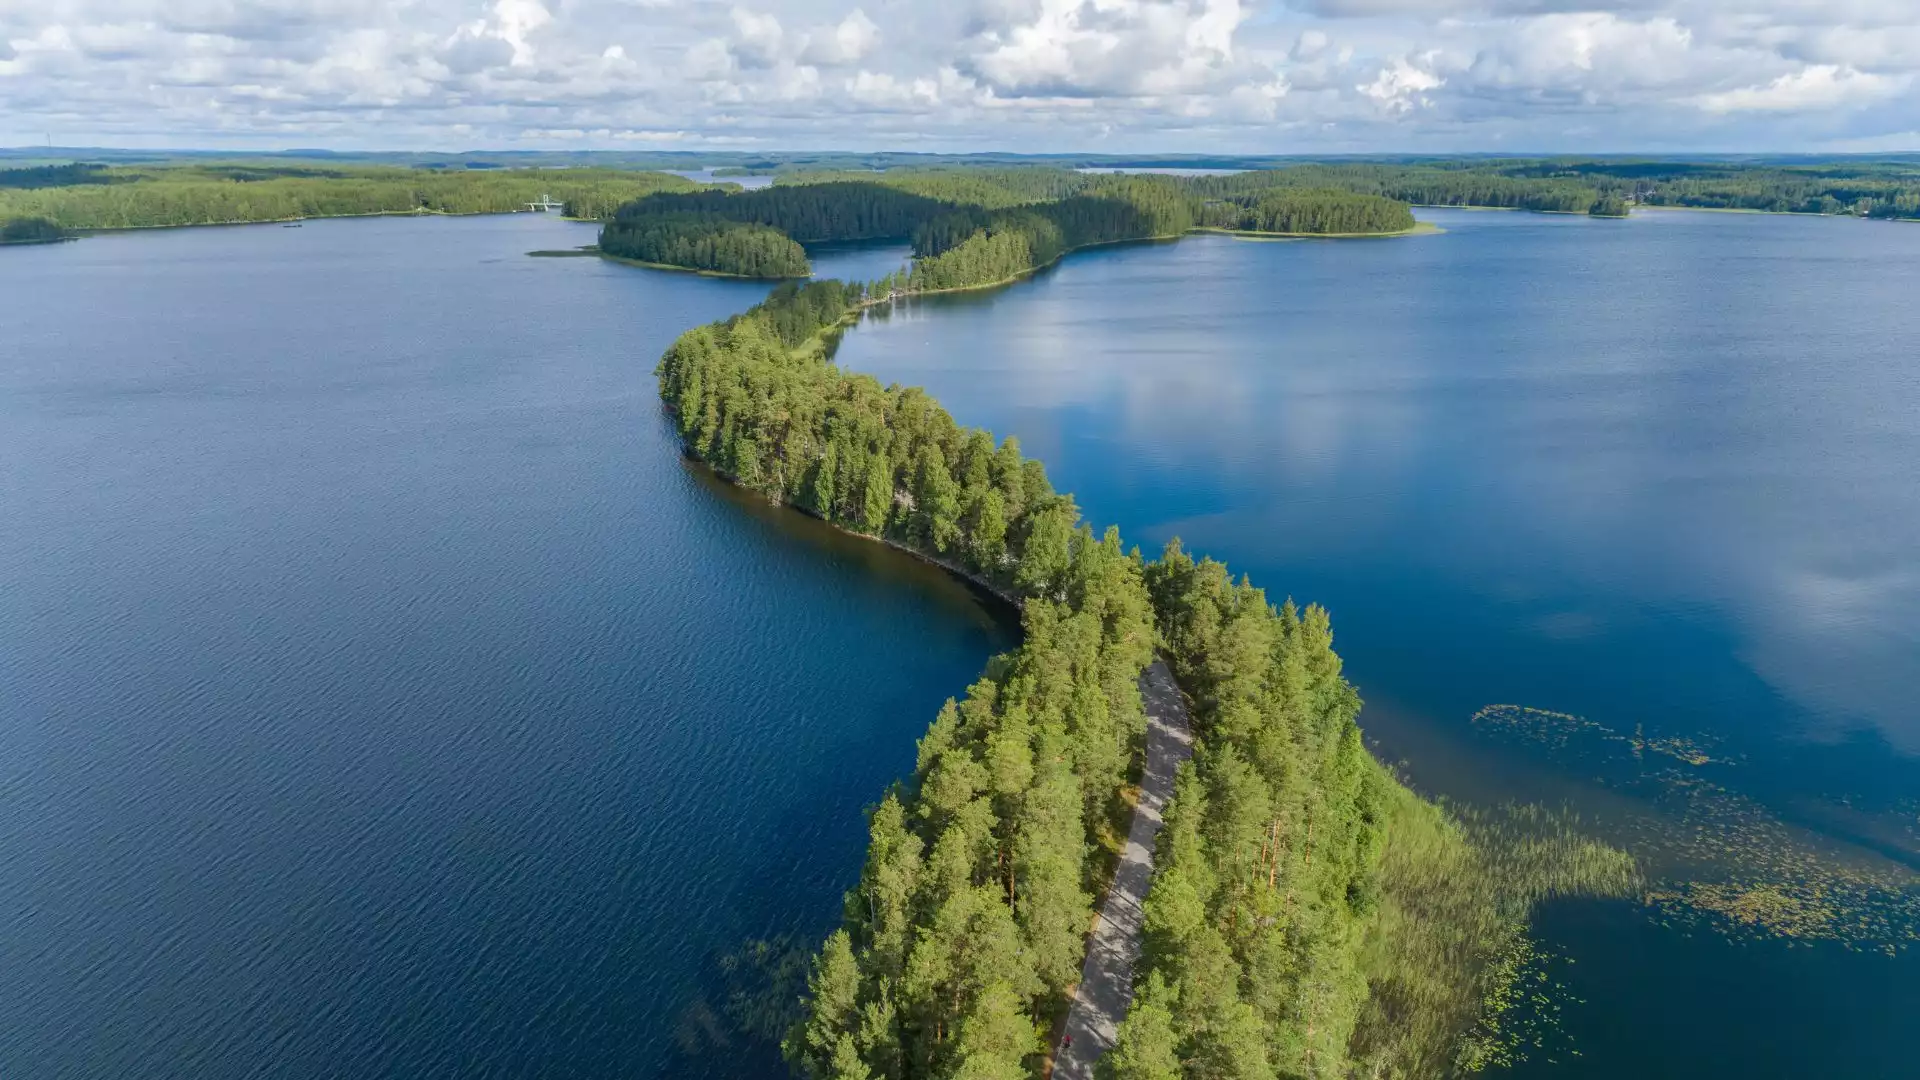 Welkom in Zuid-Finland!